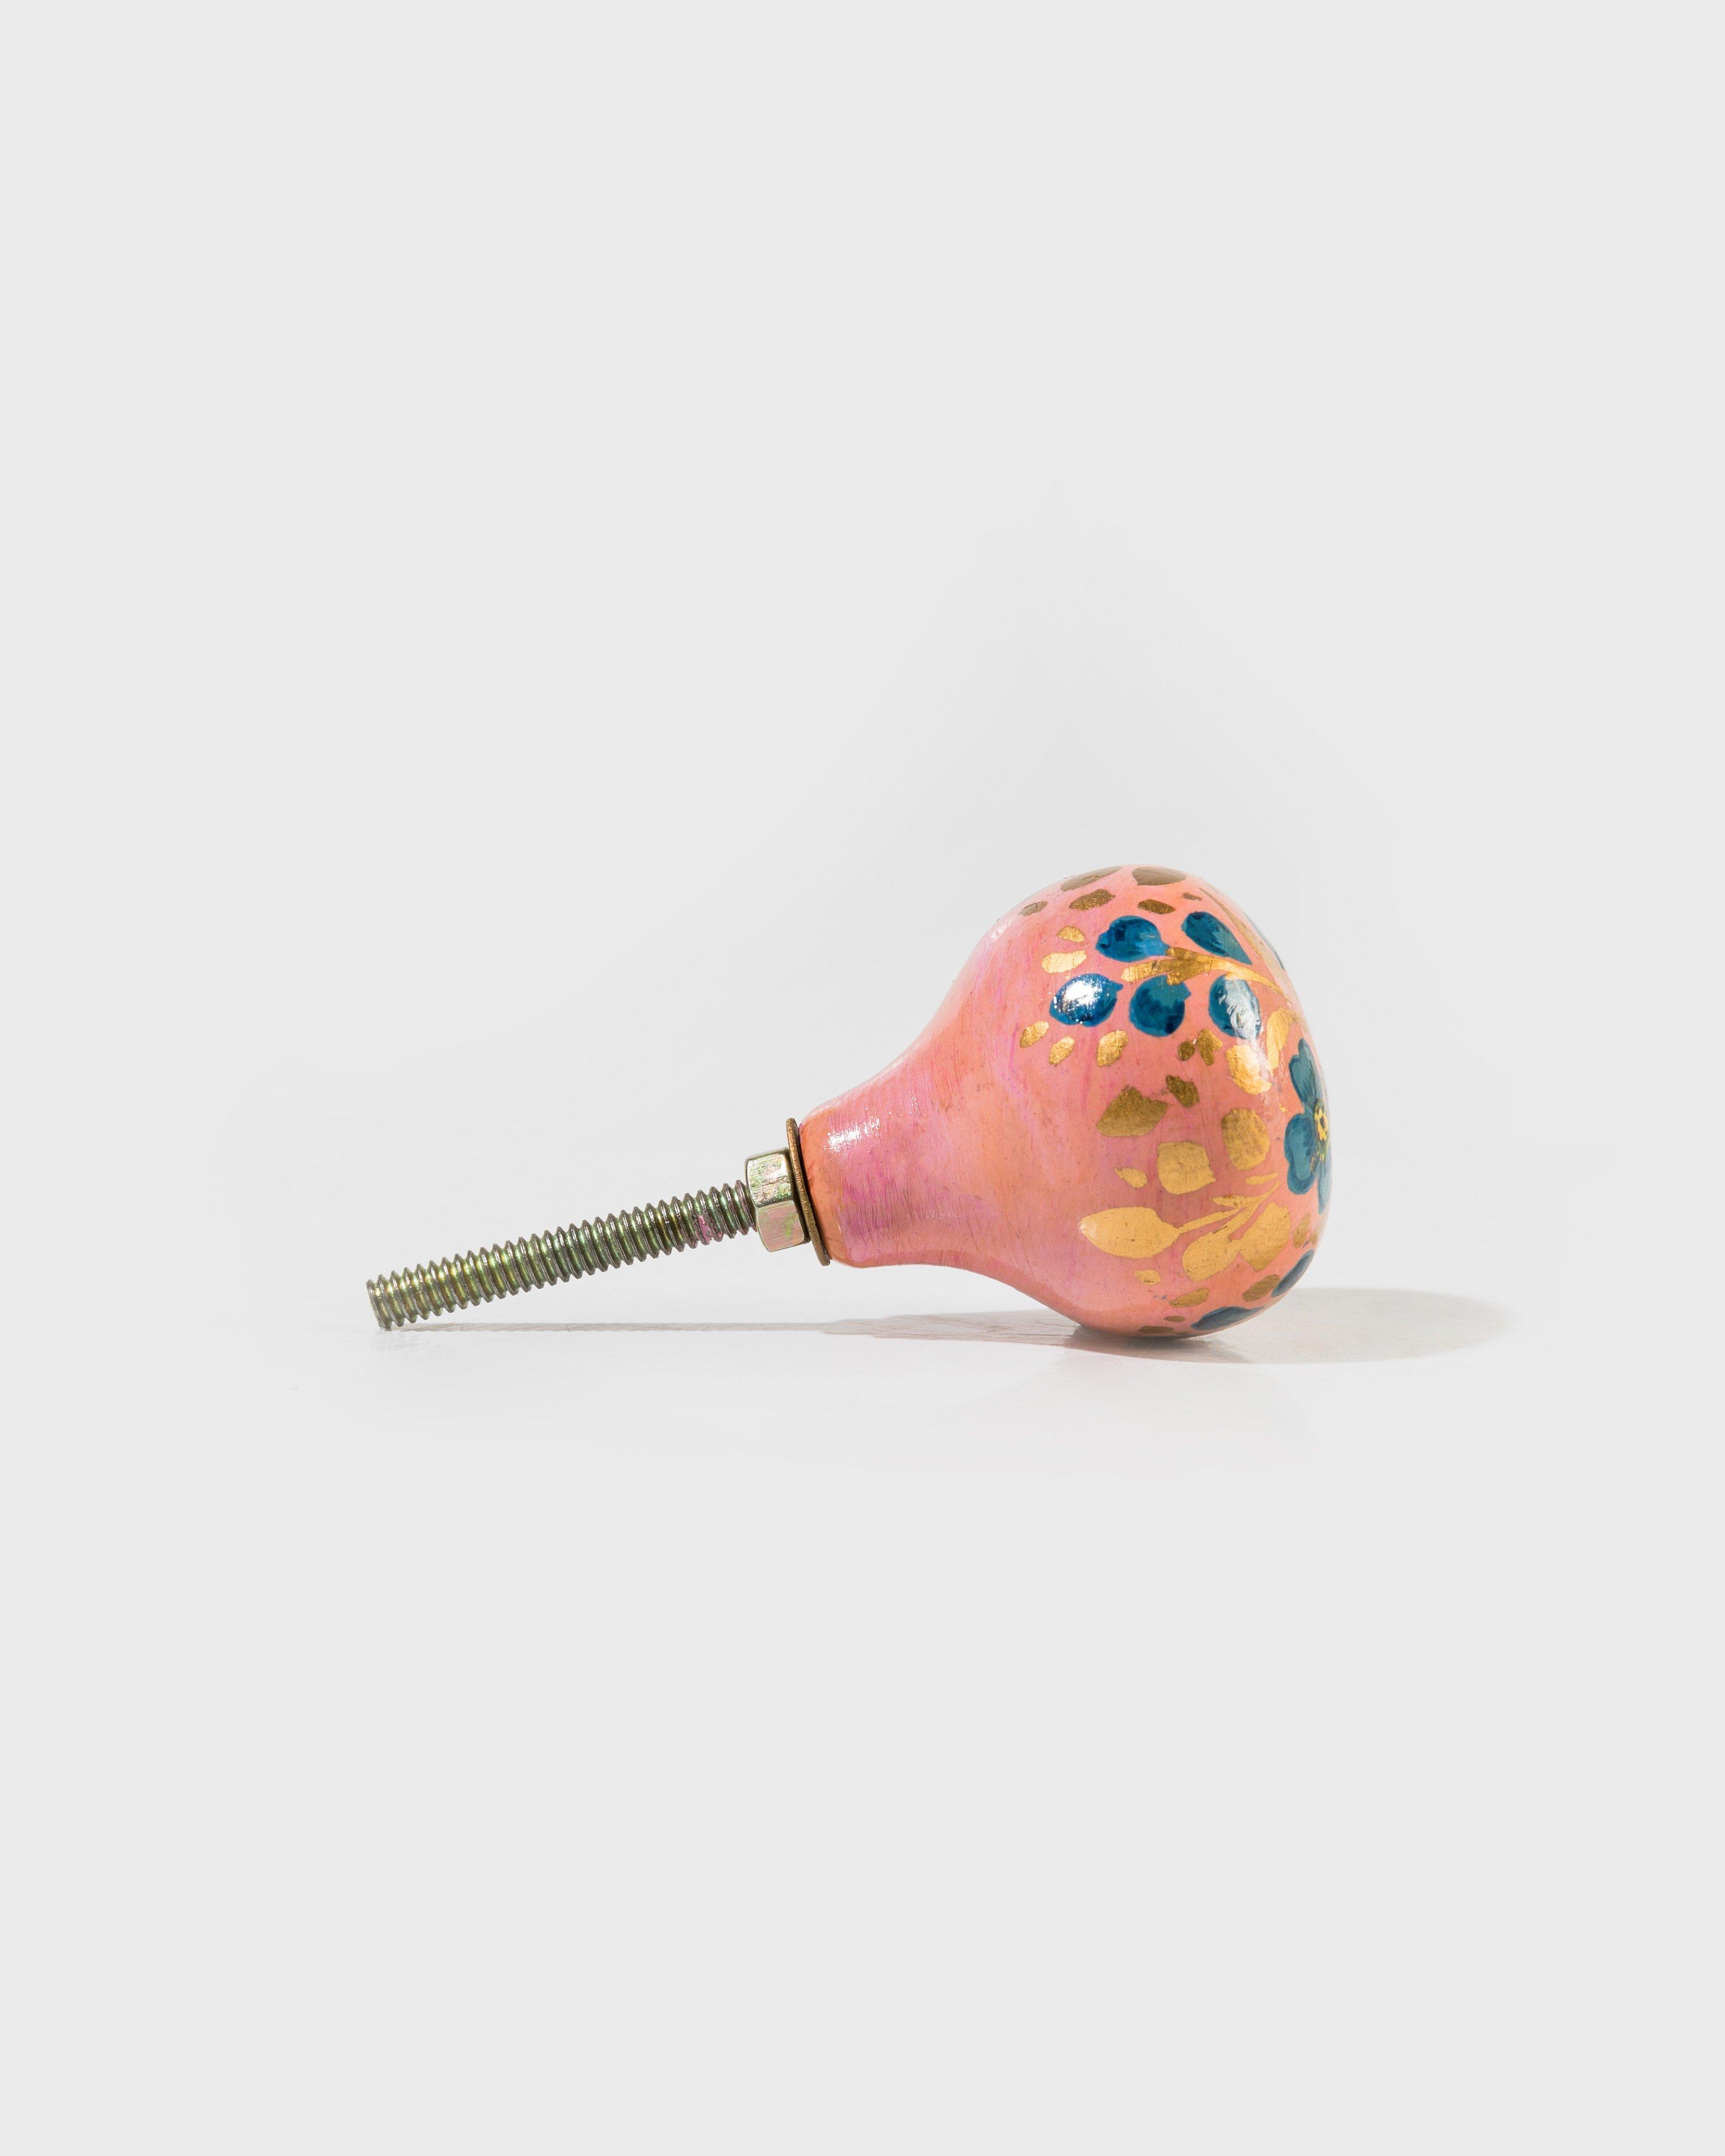 Simran Hand-Painted Knob -  Peach